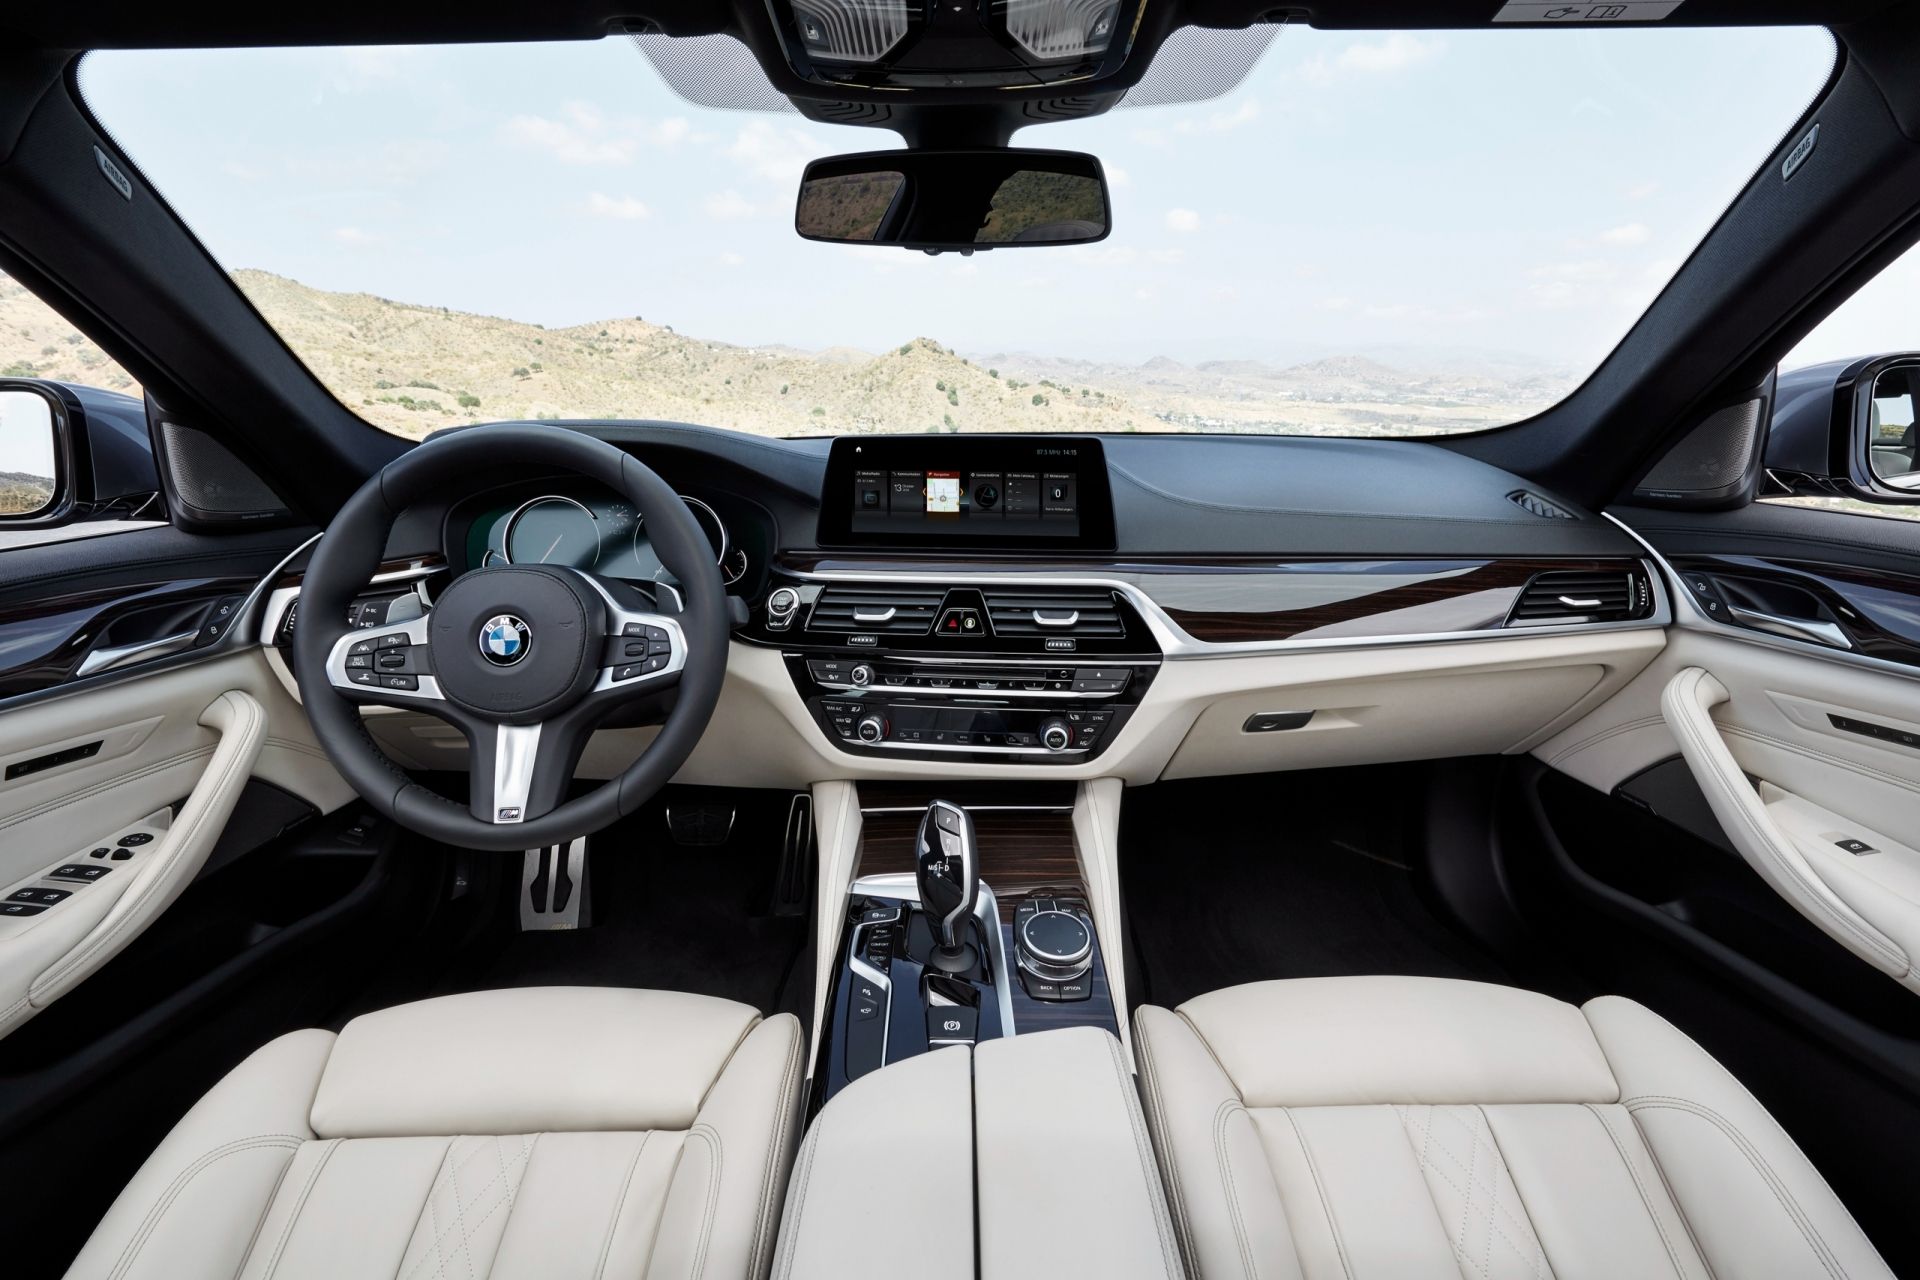 BMW g30 Interior. BMW 5 g30 салон. BMW 5 g30 2016. BMW 5 Series g30 салон. 5 series g30